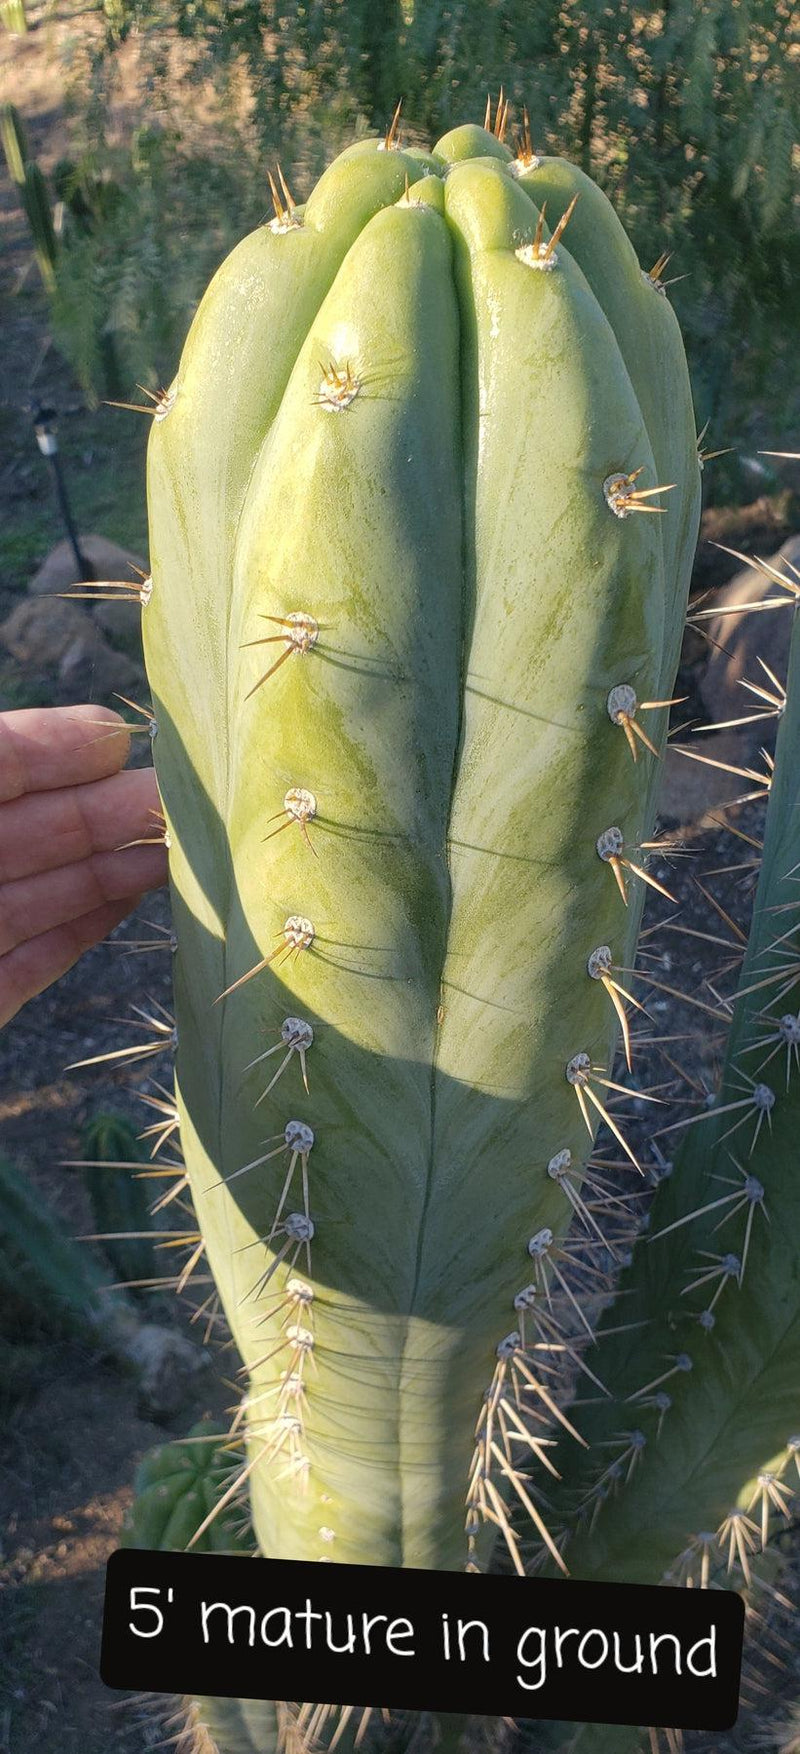 #EC45 EXACT Trichocereus Peruvianus "Storage Yard" Cactus CUTTING